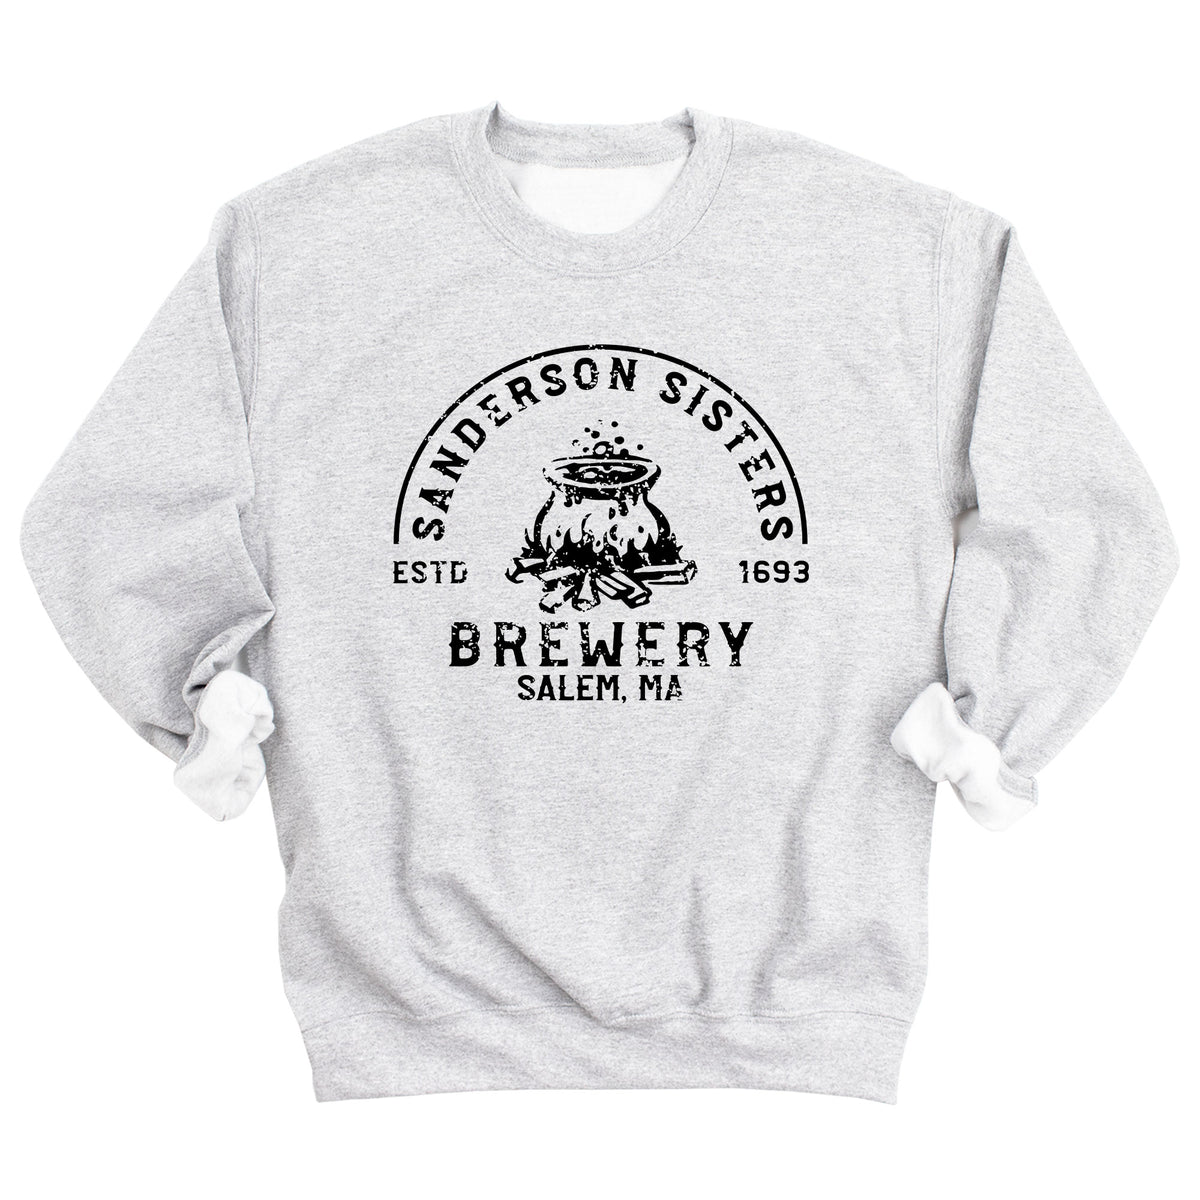 Sanderson Sisters Brewery Sweatshirt